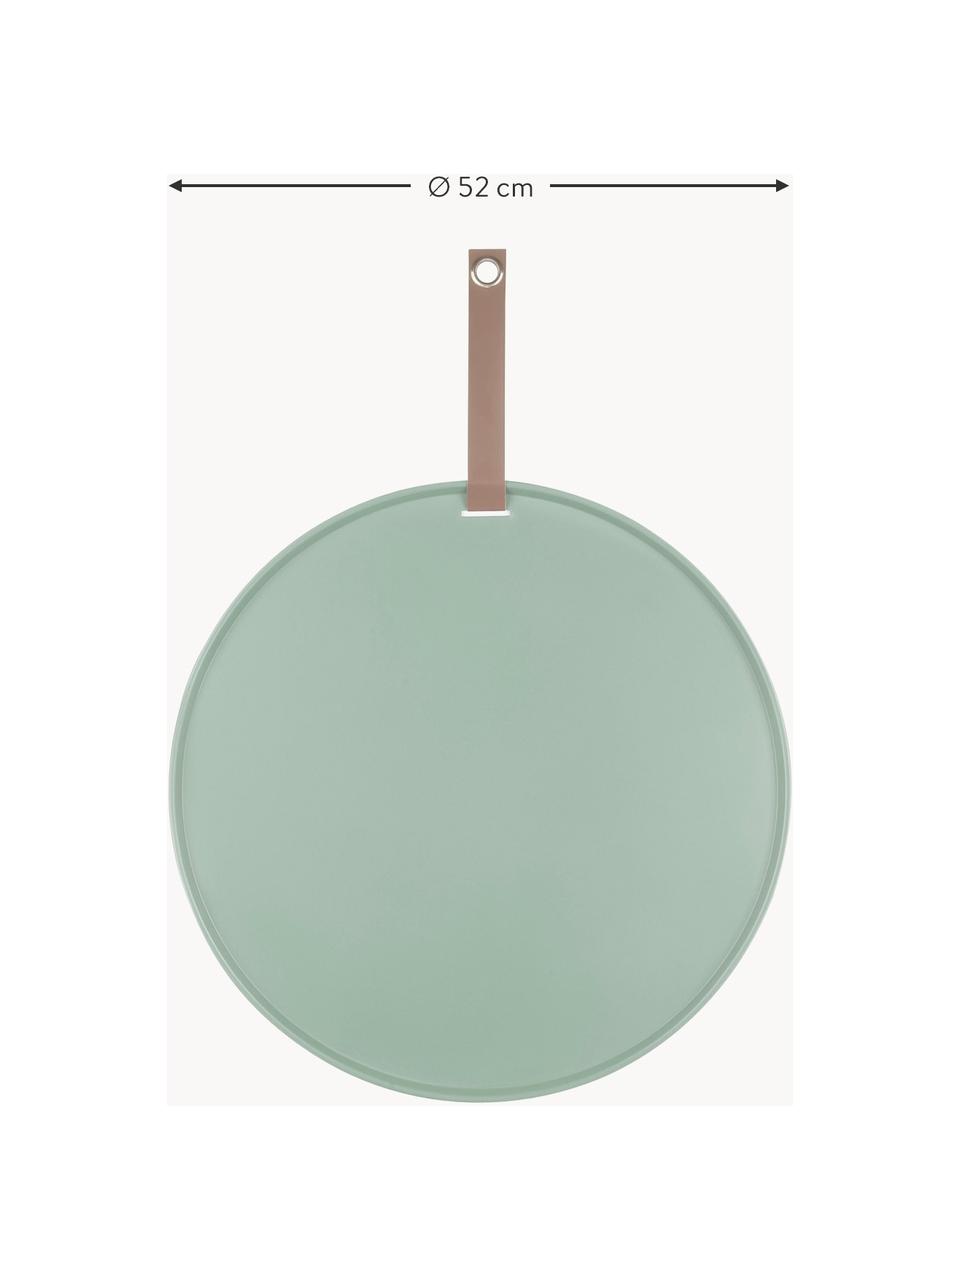 Tableau d'affichage magnétique Perky, Polyuréthane, Vert sauge, brun, Ø 52 cm